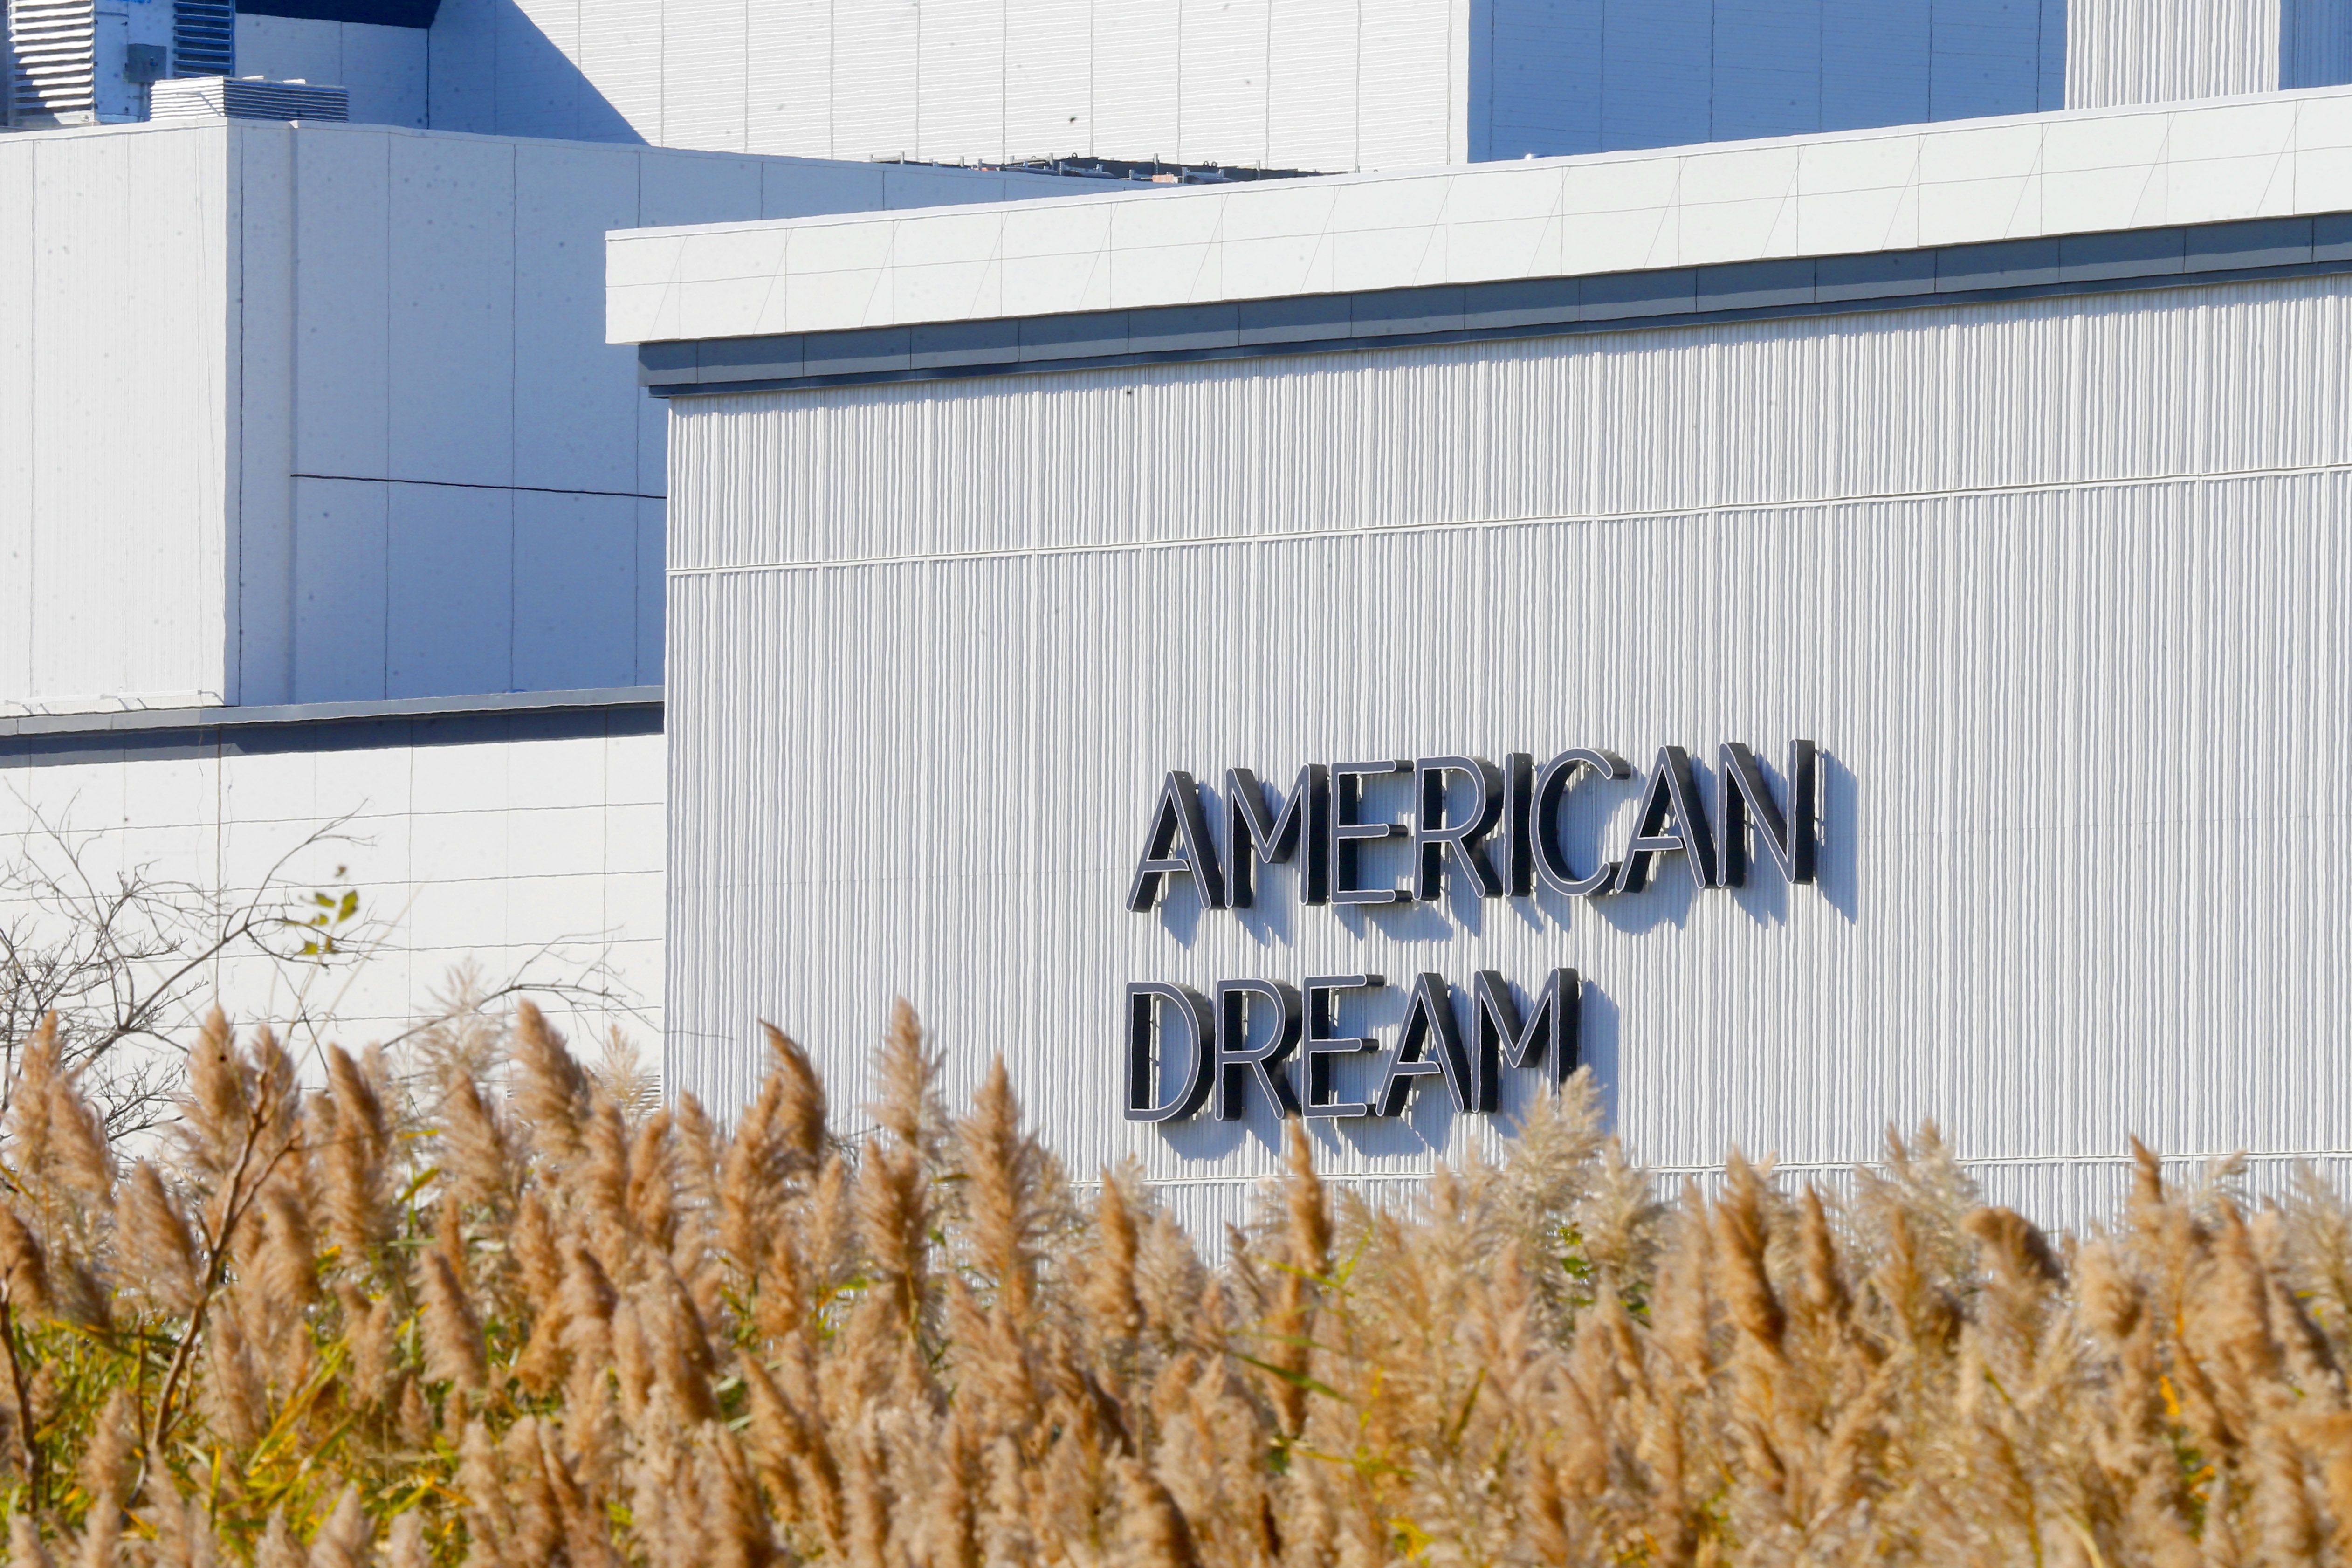 American Dream The Avenue Opens